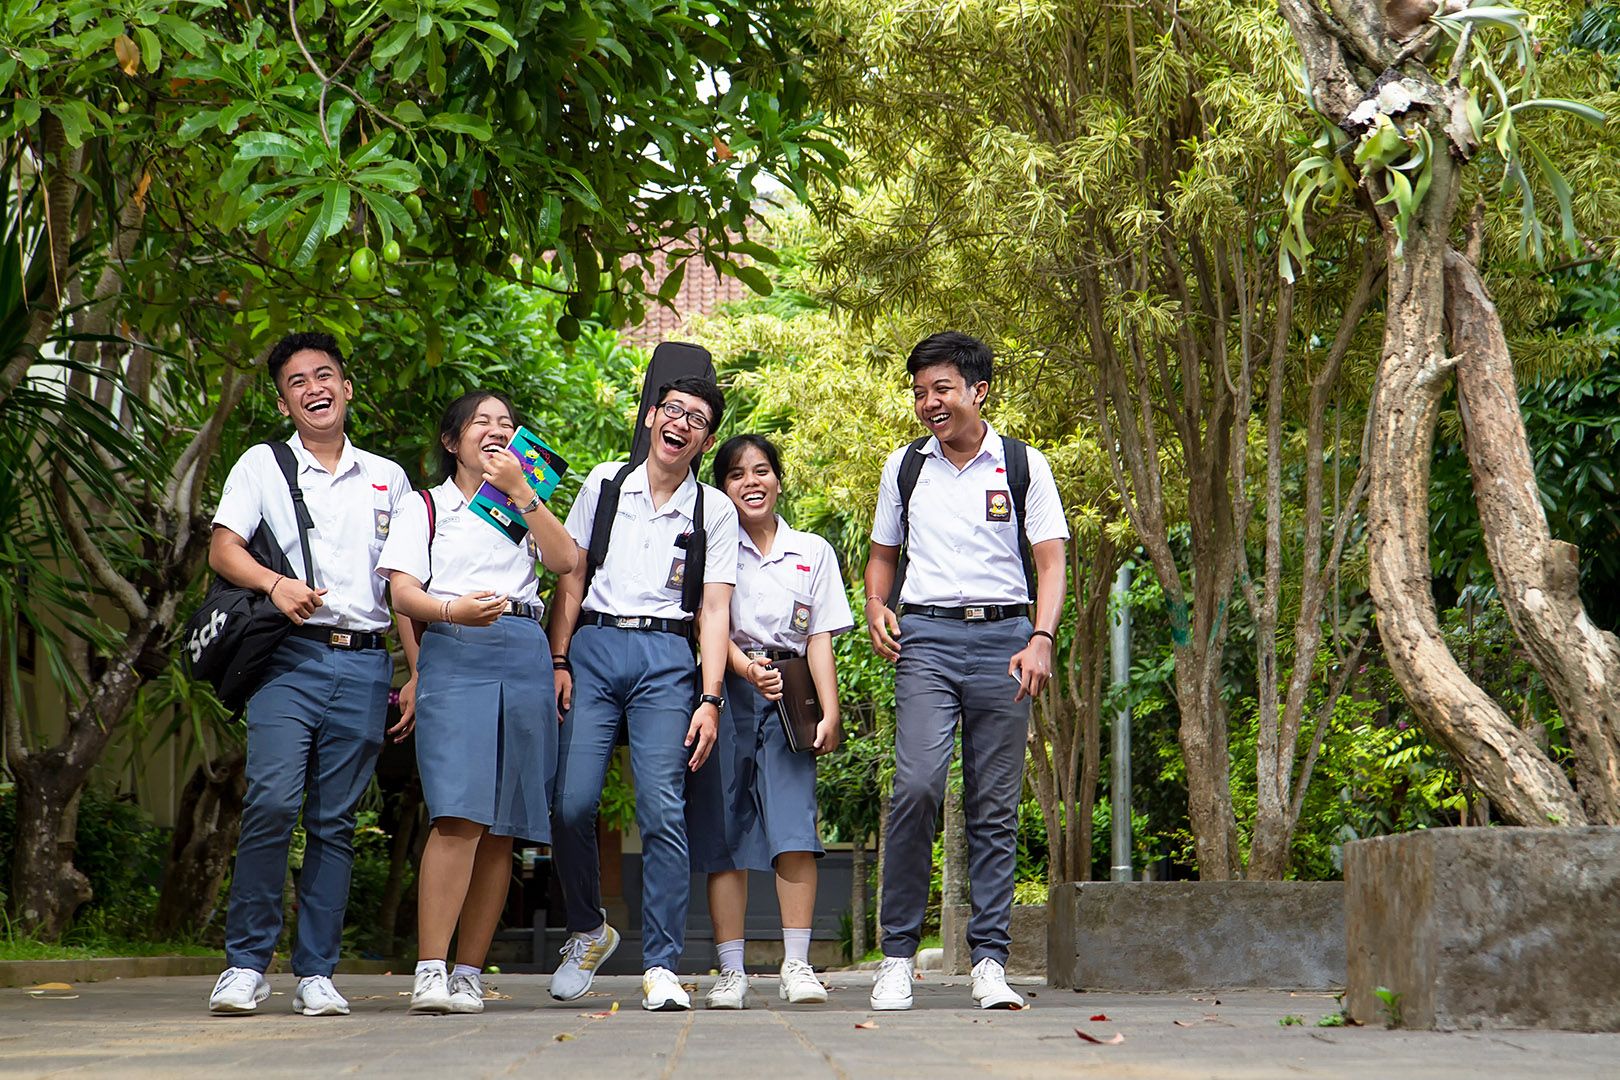  Siswa sekolah menengah atas Indonesia berjalan bersama. / Zenius